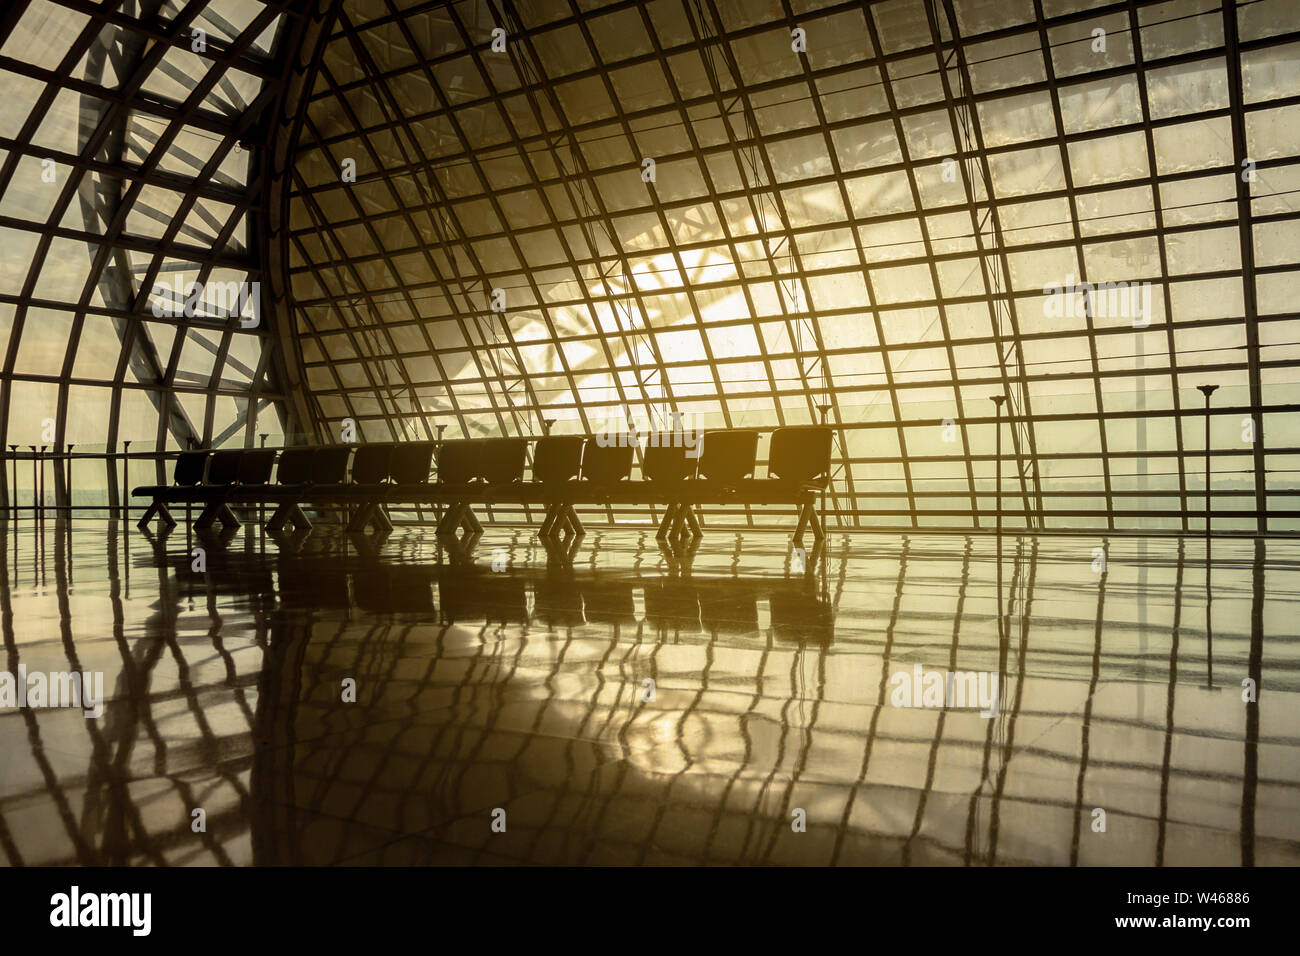 Silhouette metall Struktur des modernen Gebäude Architektur und leere Stühle warten mit warmen Sonnenlicht ähnlich wie Raumschiff Interieur. abstrakte Moderne Stockfoto